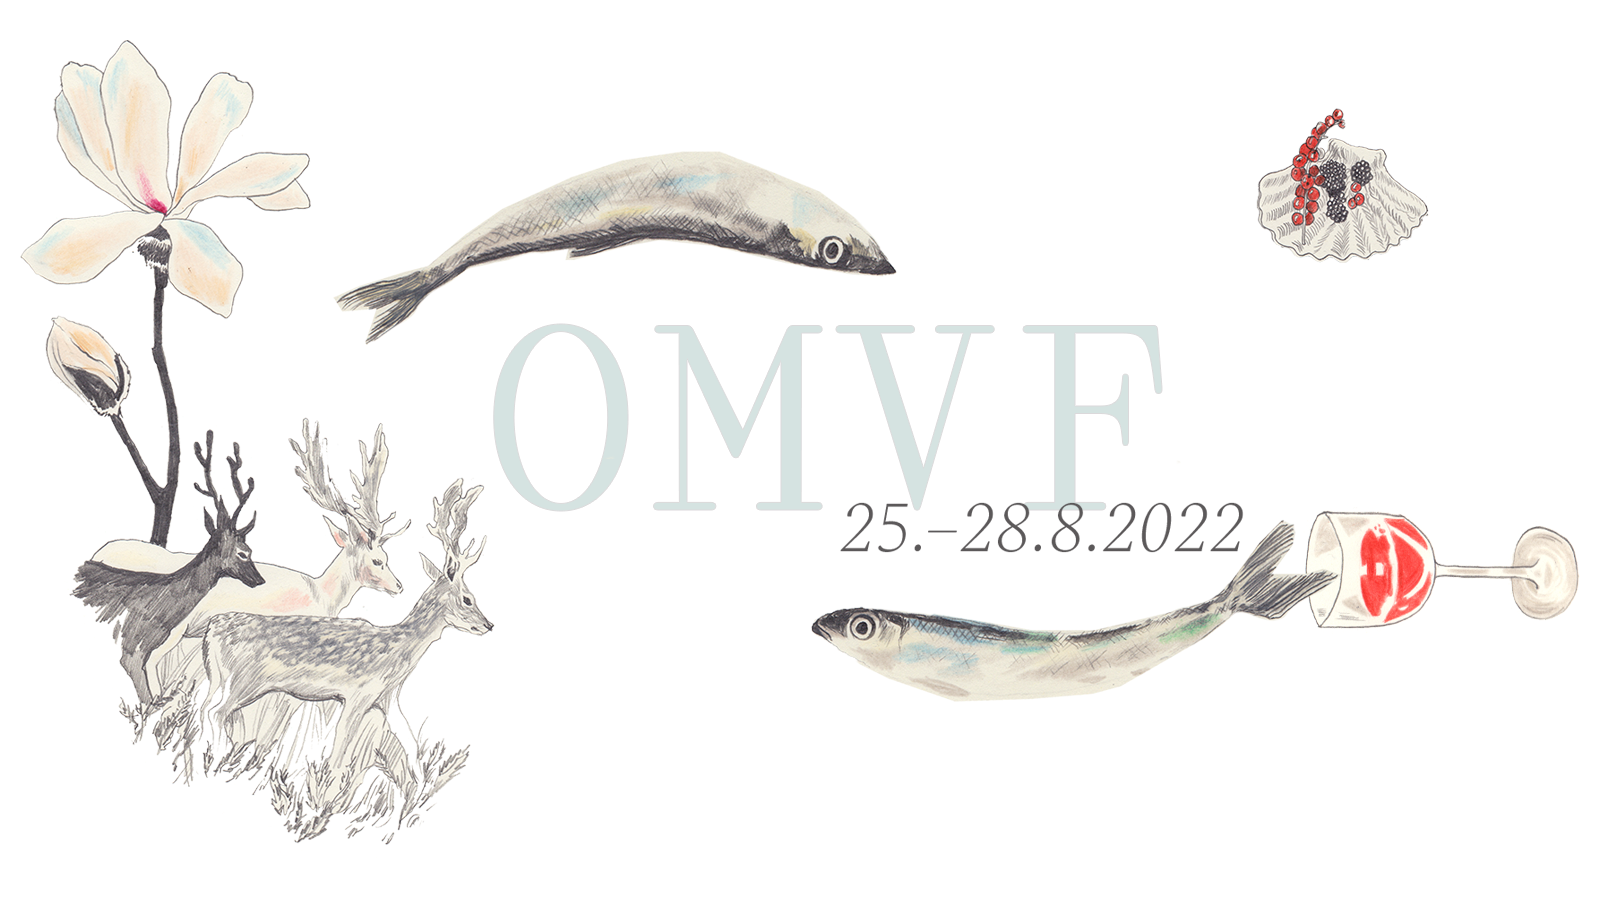 OMVF - Oulun Musiikkivideofestivaalit - Oulu Music Video Festival